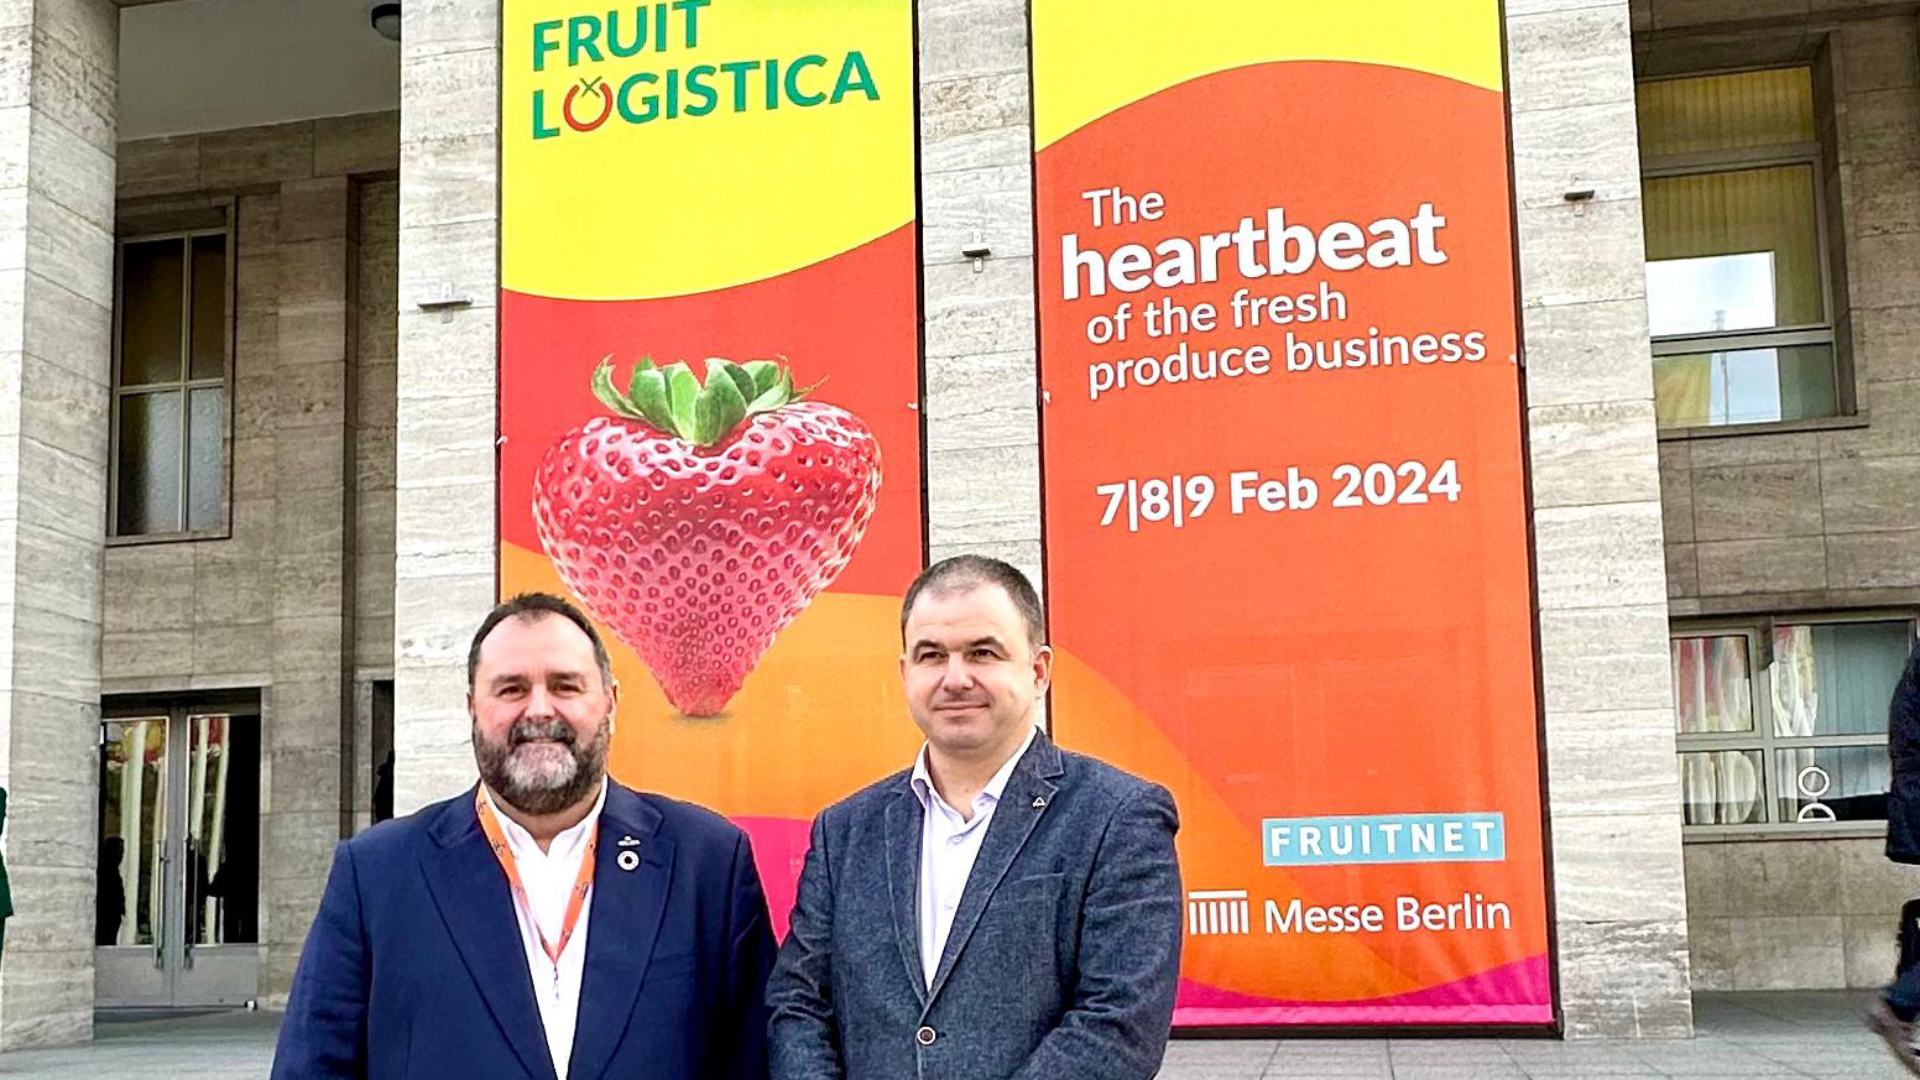 Actel i Fruits de Ponent desgranen a Fruit Logistica el seu projecte empresarial agroalimentari l’objectiu del qual és el de sumar forces i generar noves oportunitats per als seus socis